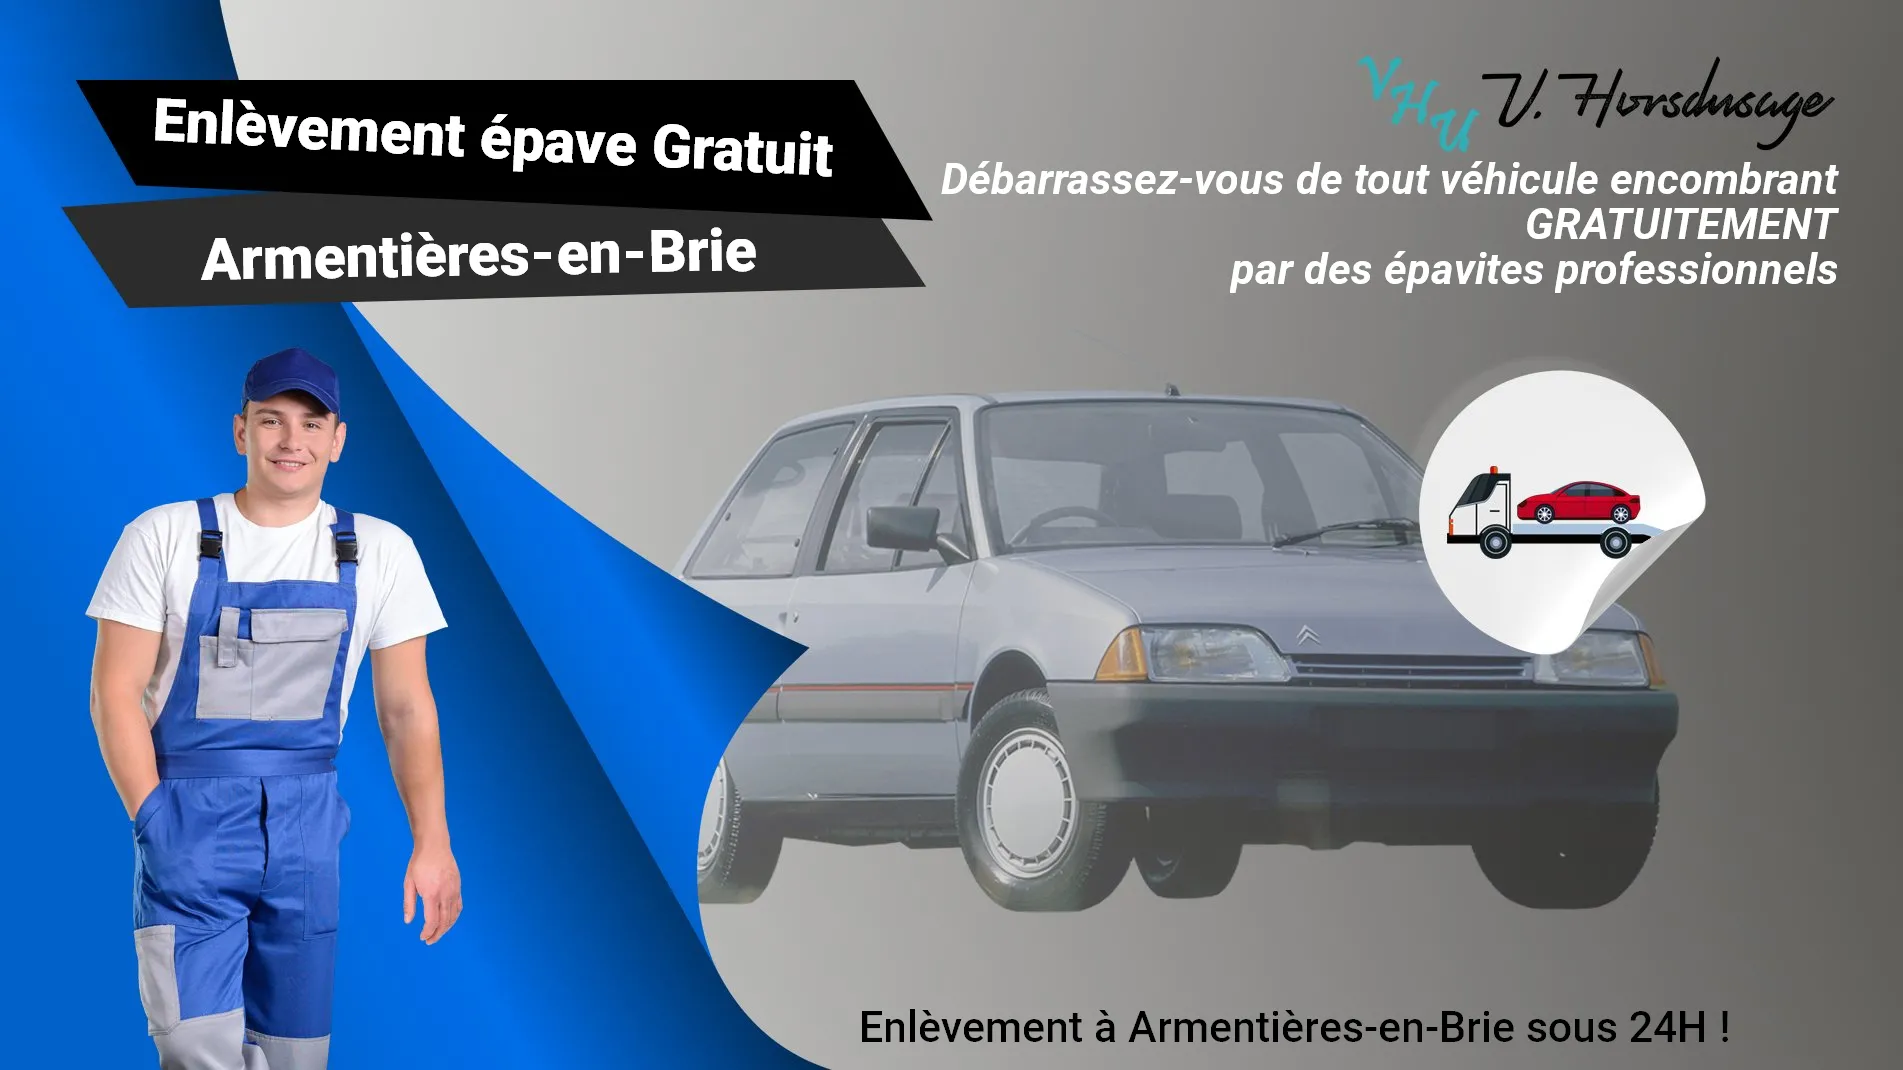 Pour un enlèvement gratuit à Armentières-en-Brie, contactez nos épavistes agréé VHU